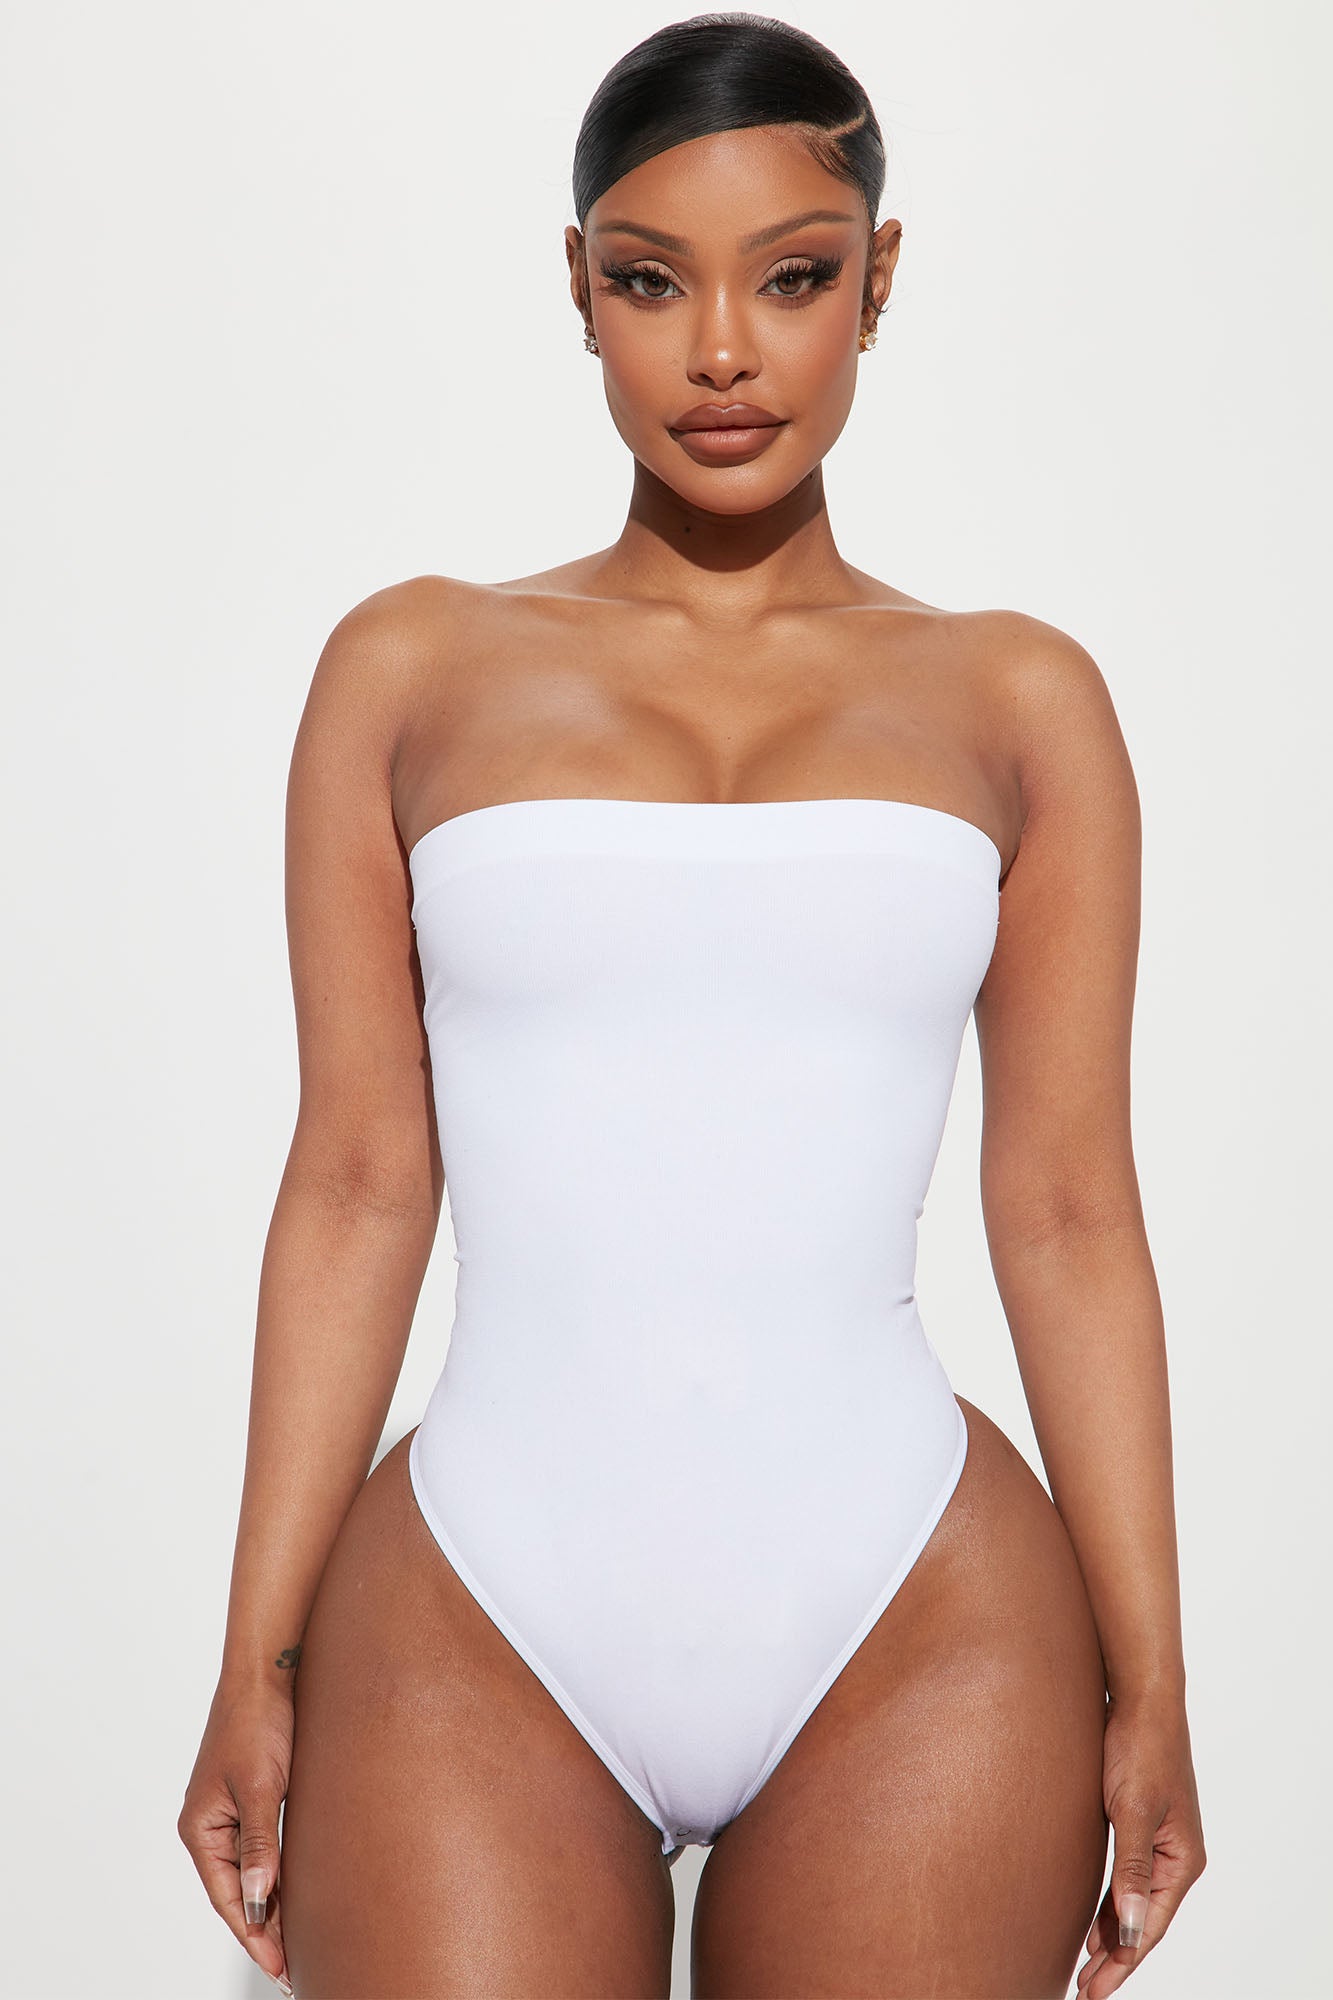 Keilani Short Sleeve Bodysuit - White, Fashion Nova, Bodysuits